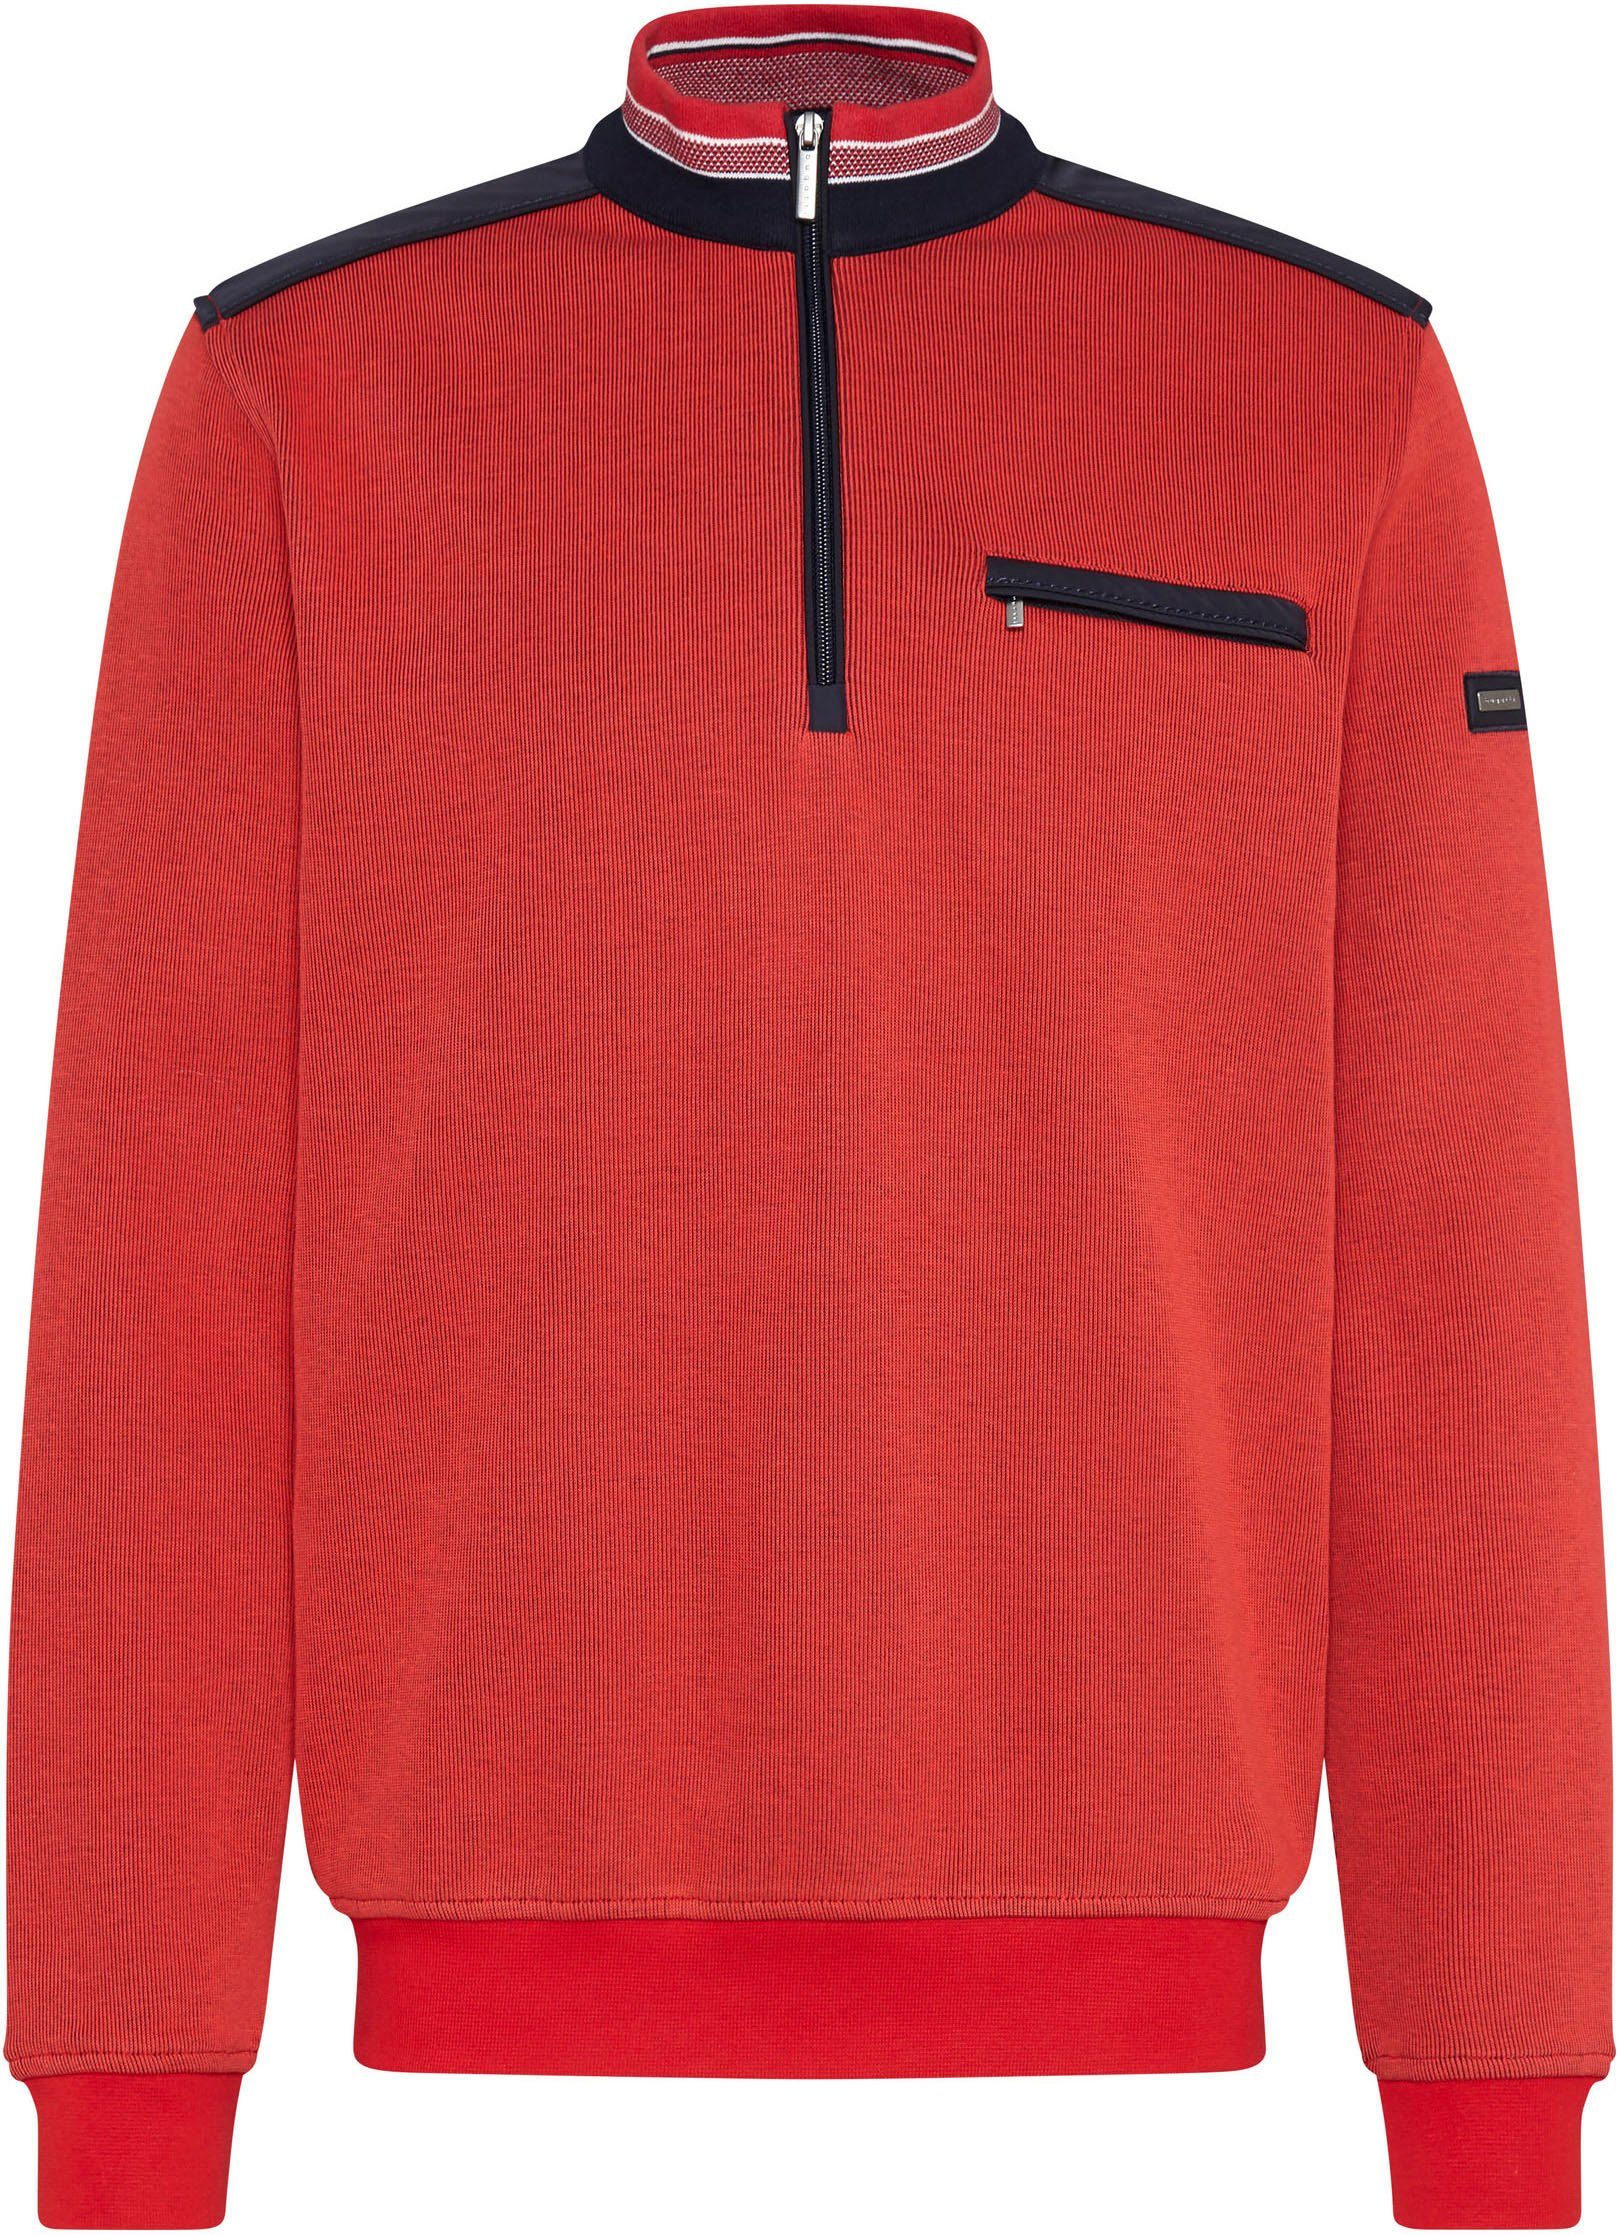 Half-Zipper rot bugatti mit Sweatshirt